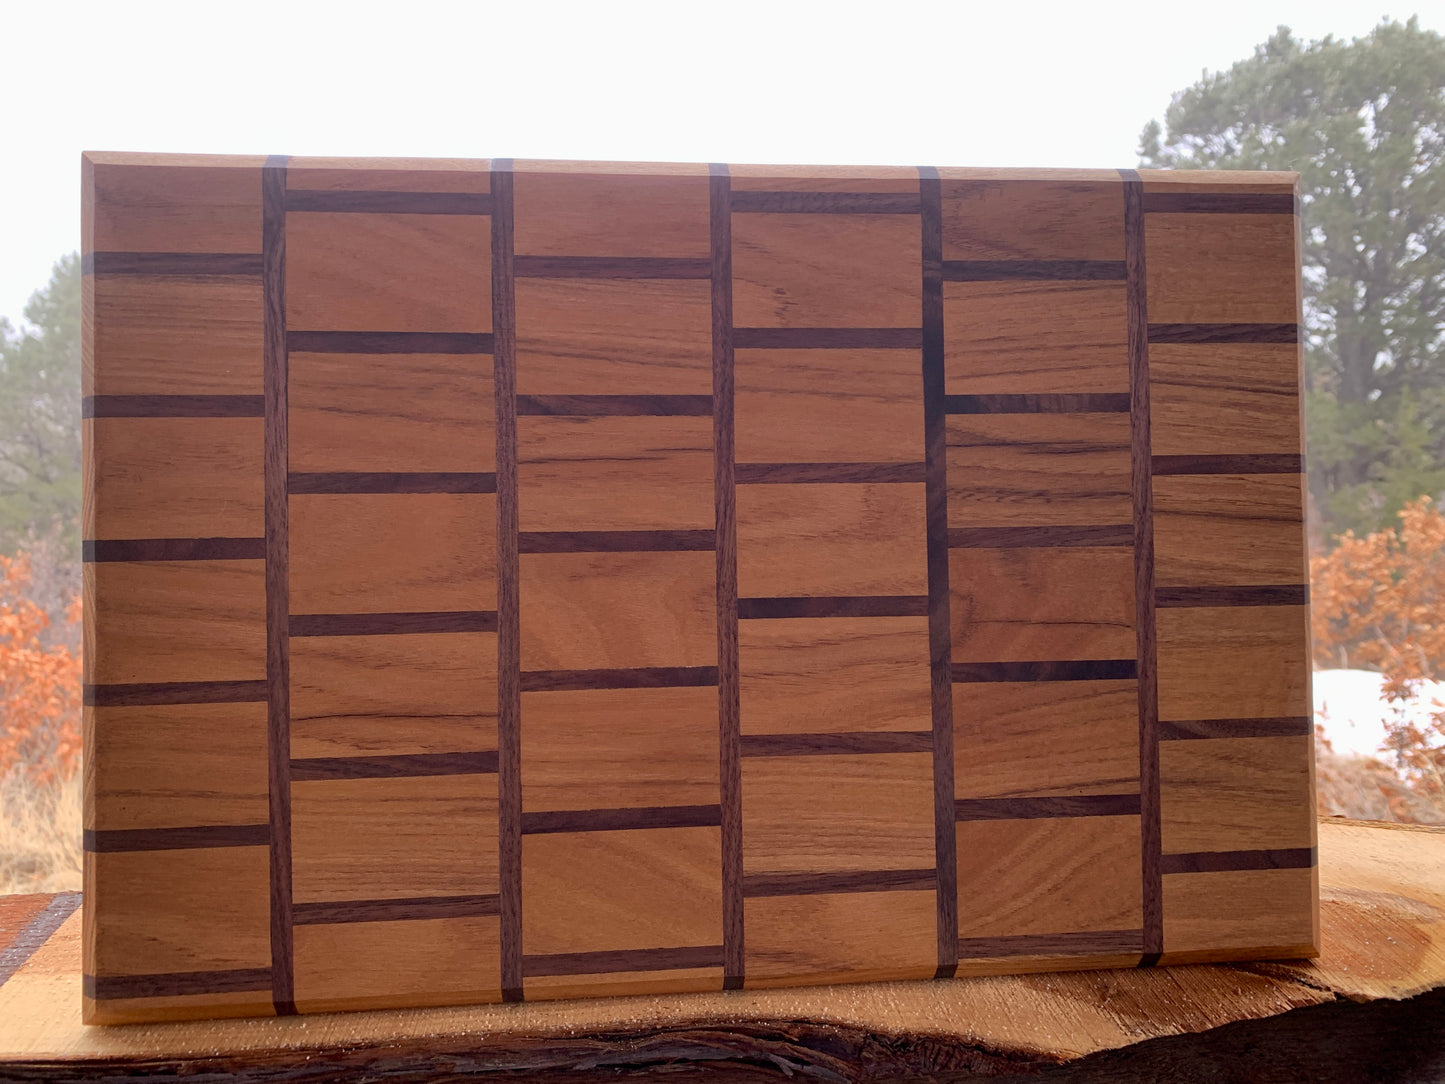 Red oak and Walnut Cutting Board